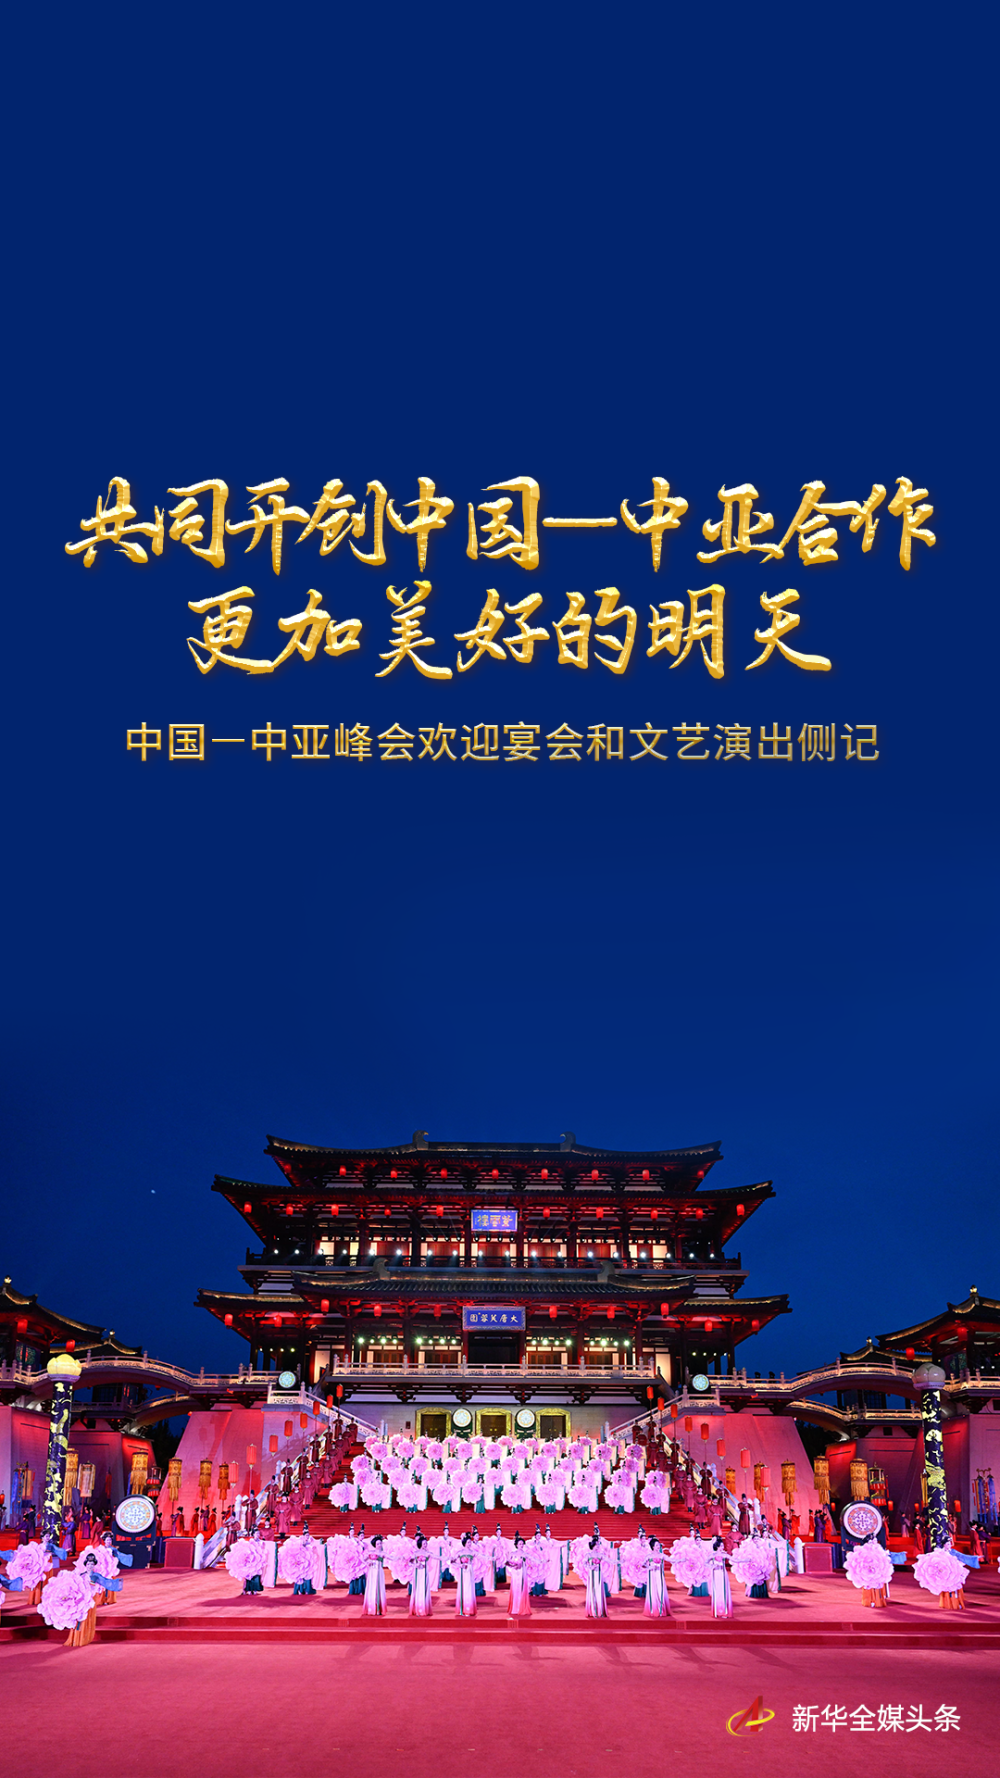 古都西安盛情迎接远道而来出席中国—中亚峰会的五国贵宾